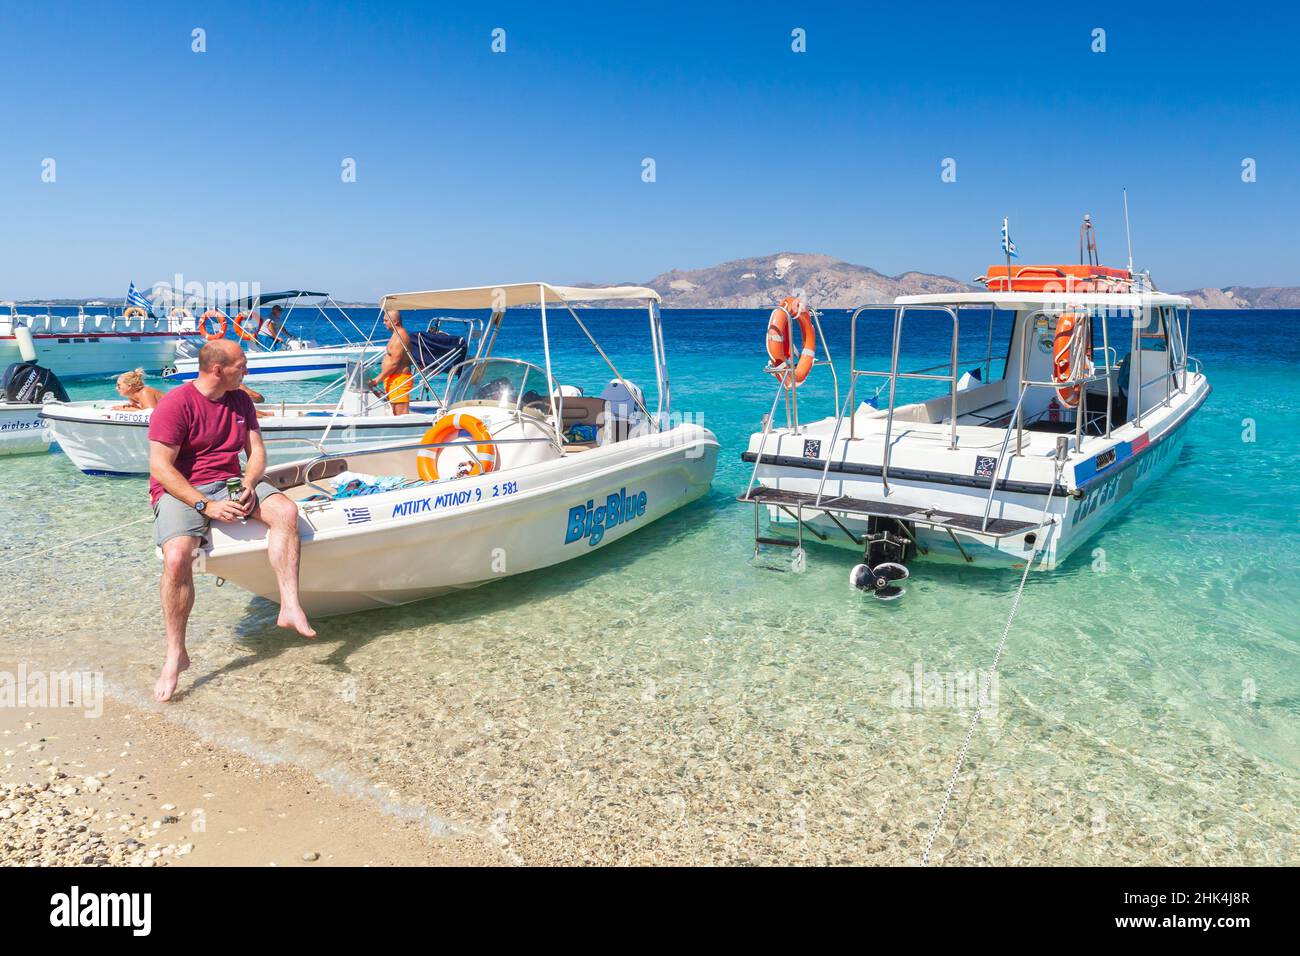 Zakynthos, Greece - August 16, 2016: People rest near pleasure motor boats at the beach. Zakynthos island, Greece Stock Photo